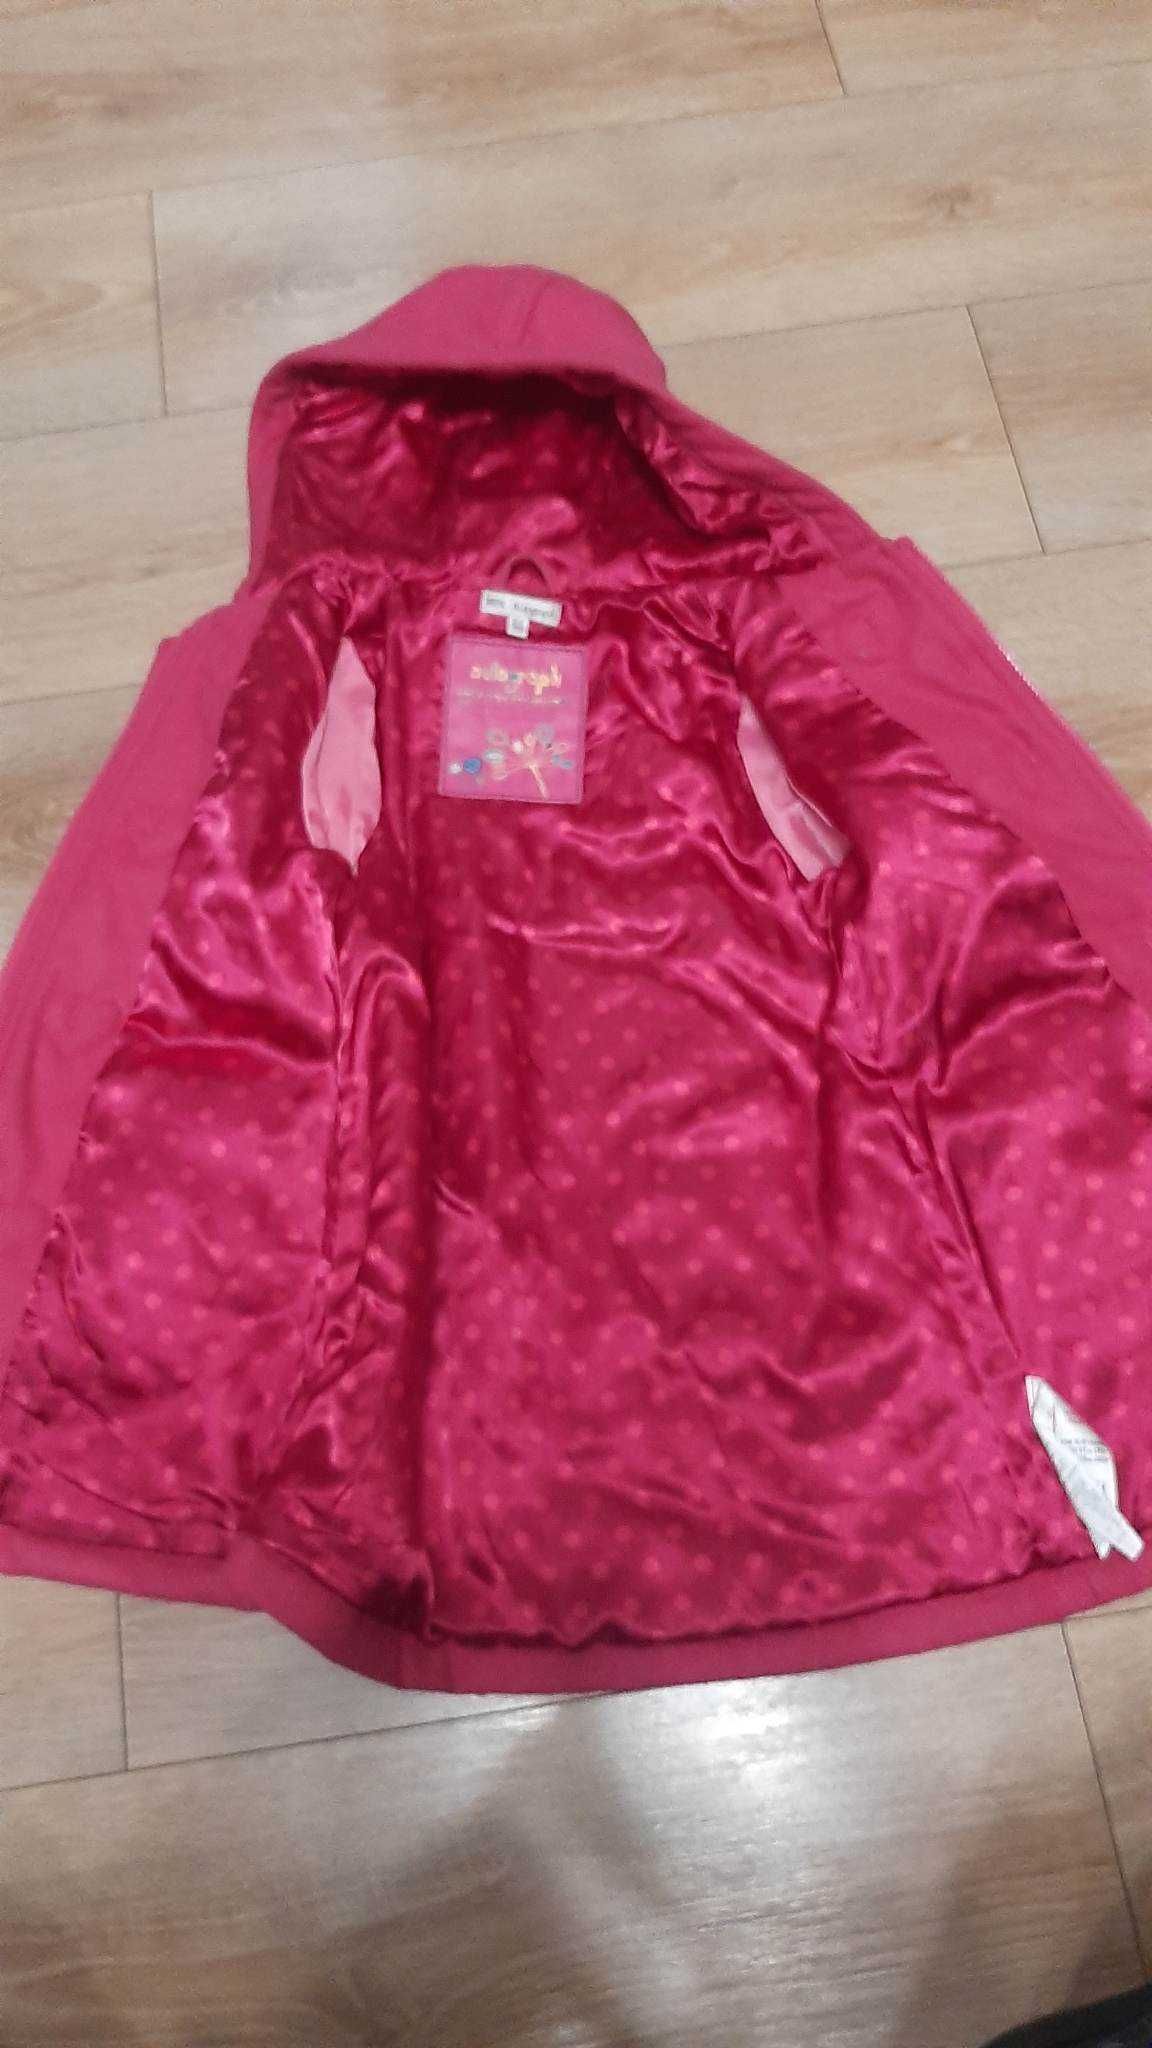 Płaszczyk ciemno różowy dla dziewczynki roz. 110-116, 5 -6 lat.